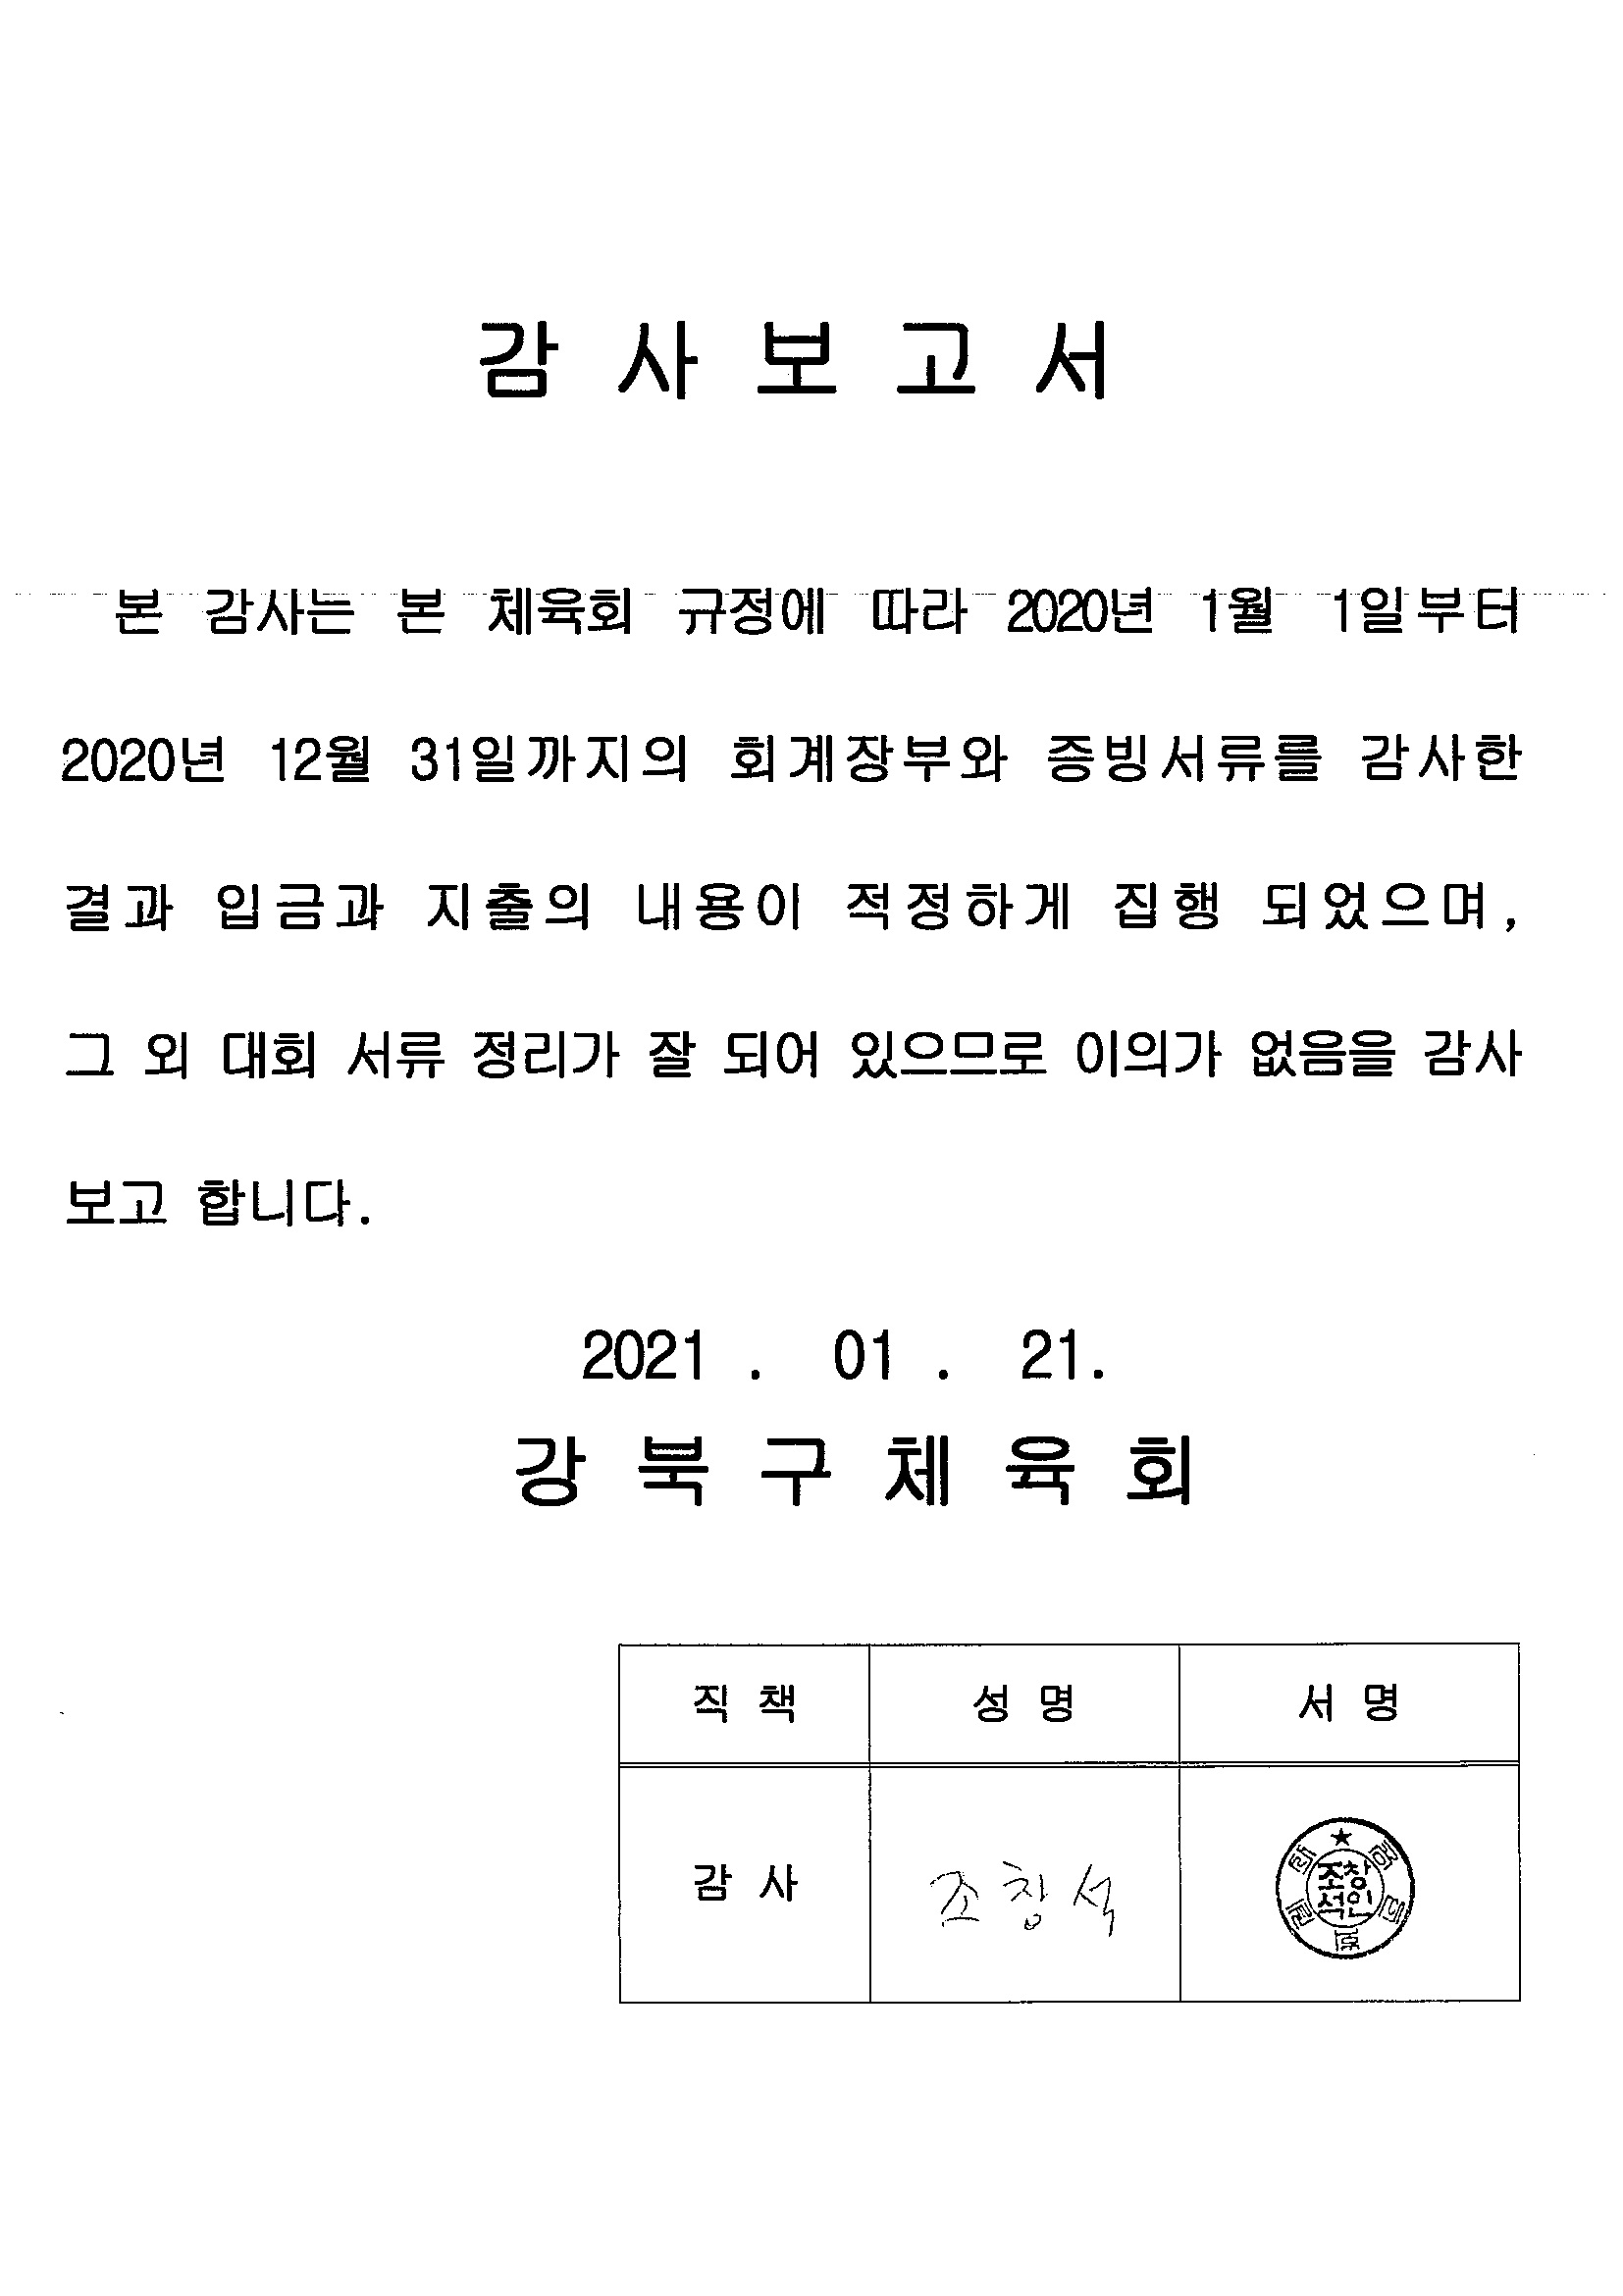 13. 강북구체육회 2020년도 회계감사보고서.jpg